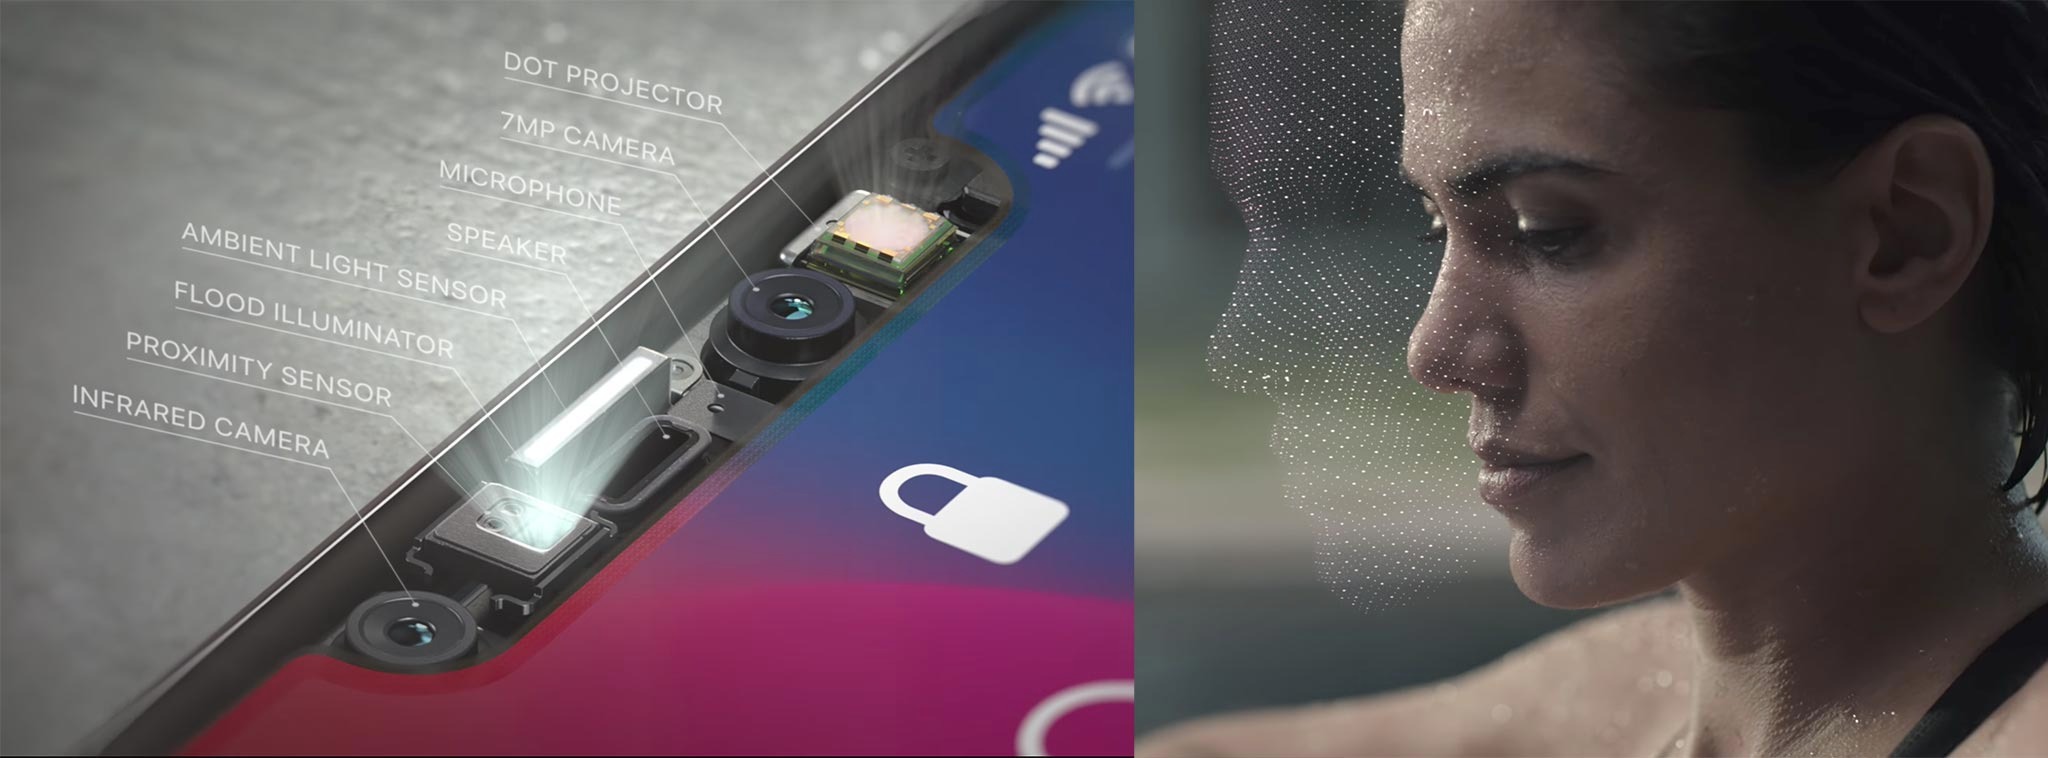 Apple đang gặp vấn đề liên quan đến nguồn cung ứng cảm biến 3D trên iPhone X